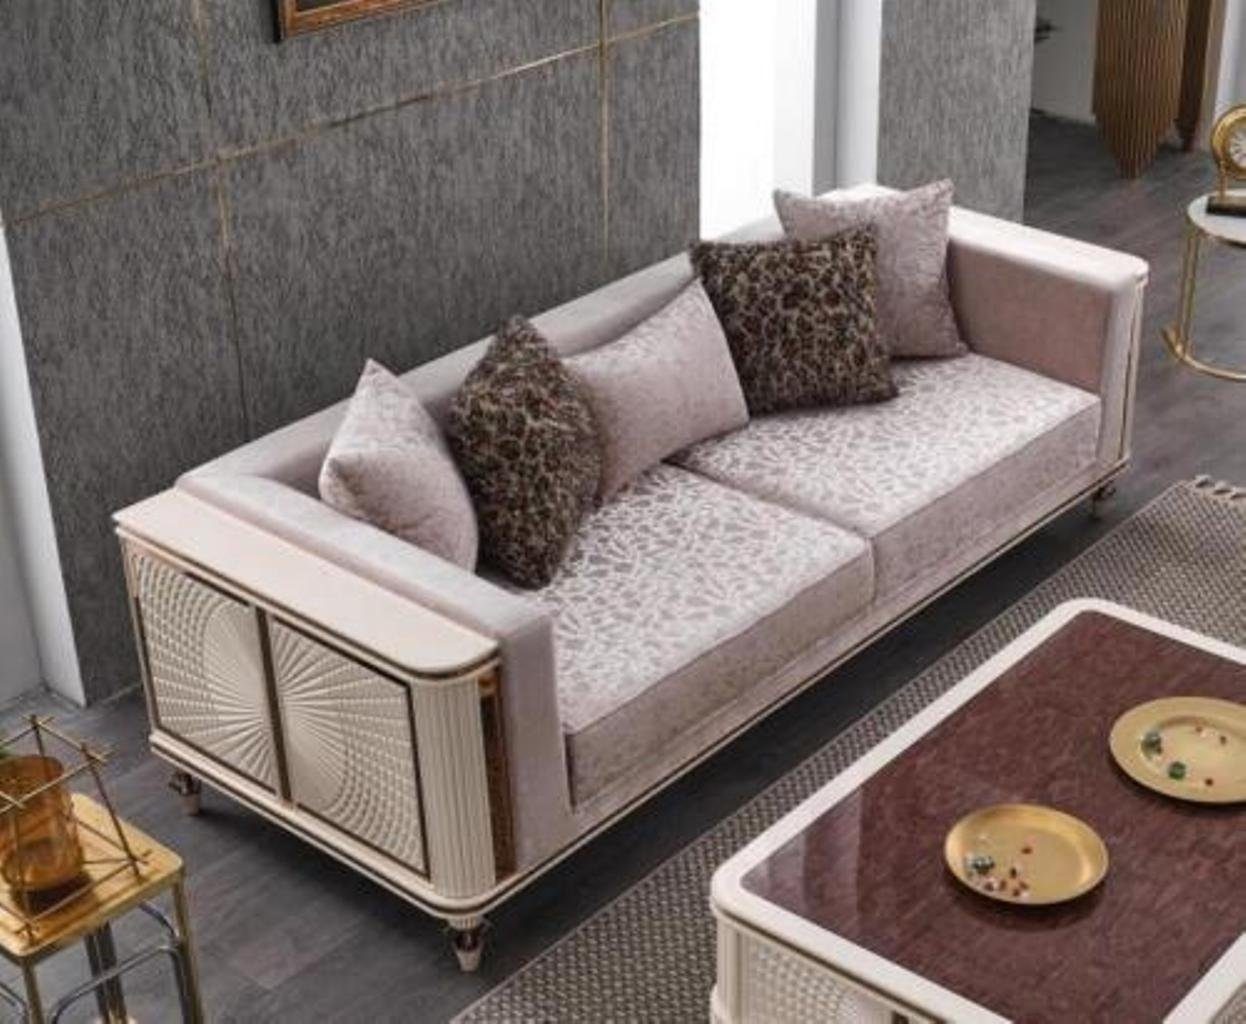 JVmoebel 3-Sitzer Sofa Sitzer Wohnzimmer Möbel Stoff, Couch Made 1 3 Europa in Design Modern 240cm Teile